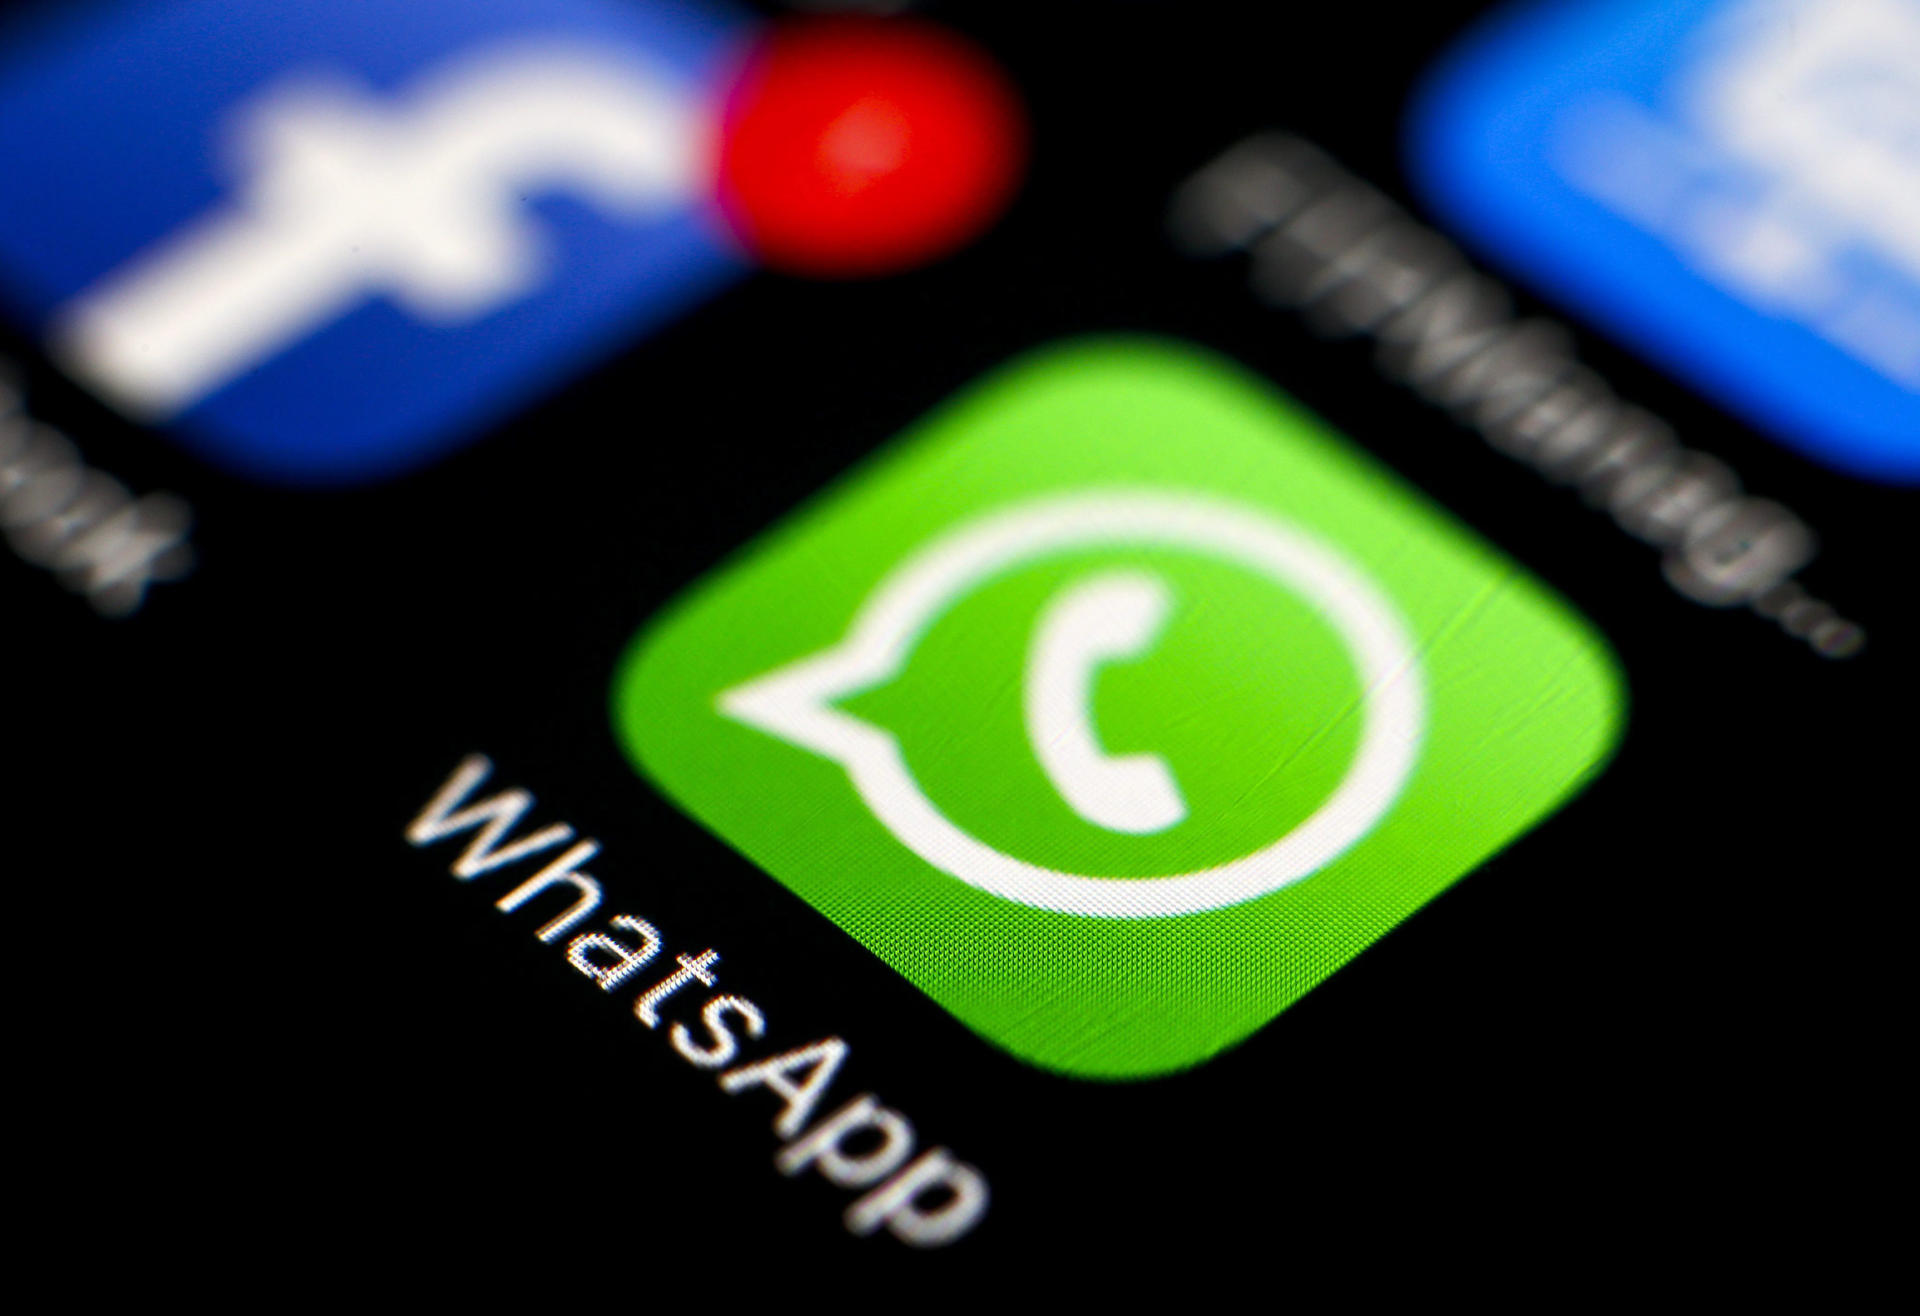 Vista el logo de la aplicación de mensajería WhatsApp en un teléfono móvil, en una fotografía de archivo. EFE/Ritchie B. Tongo